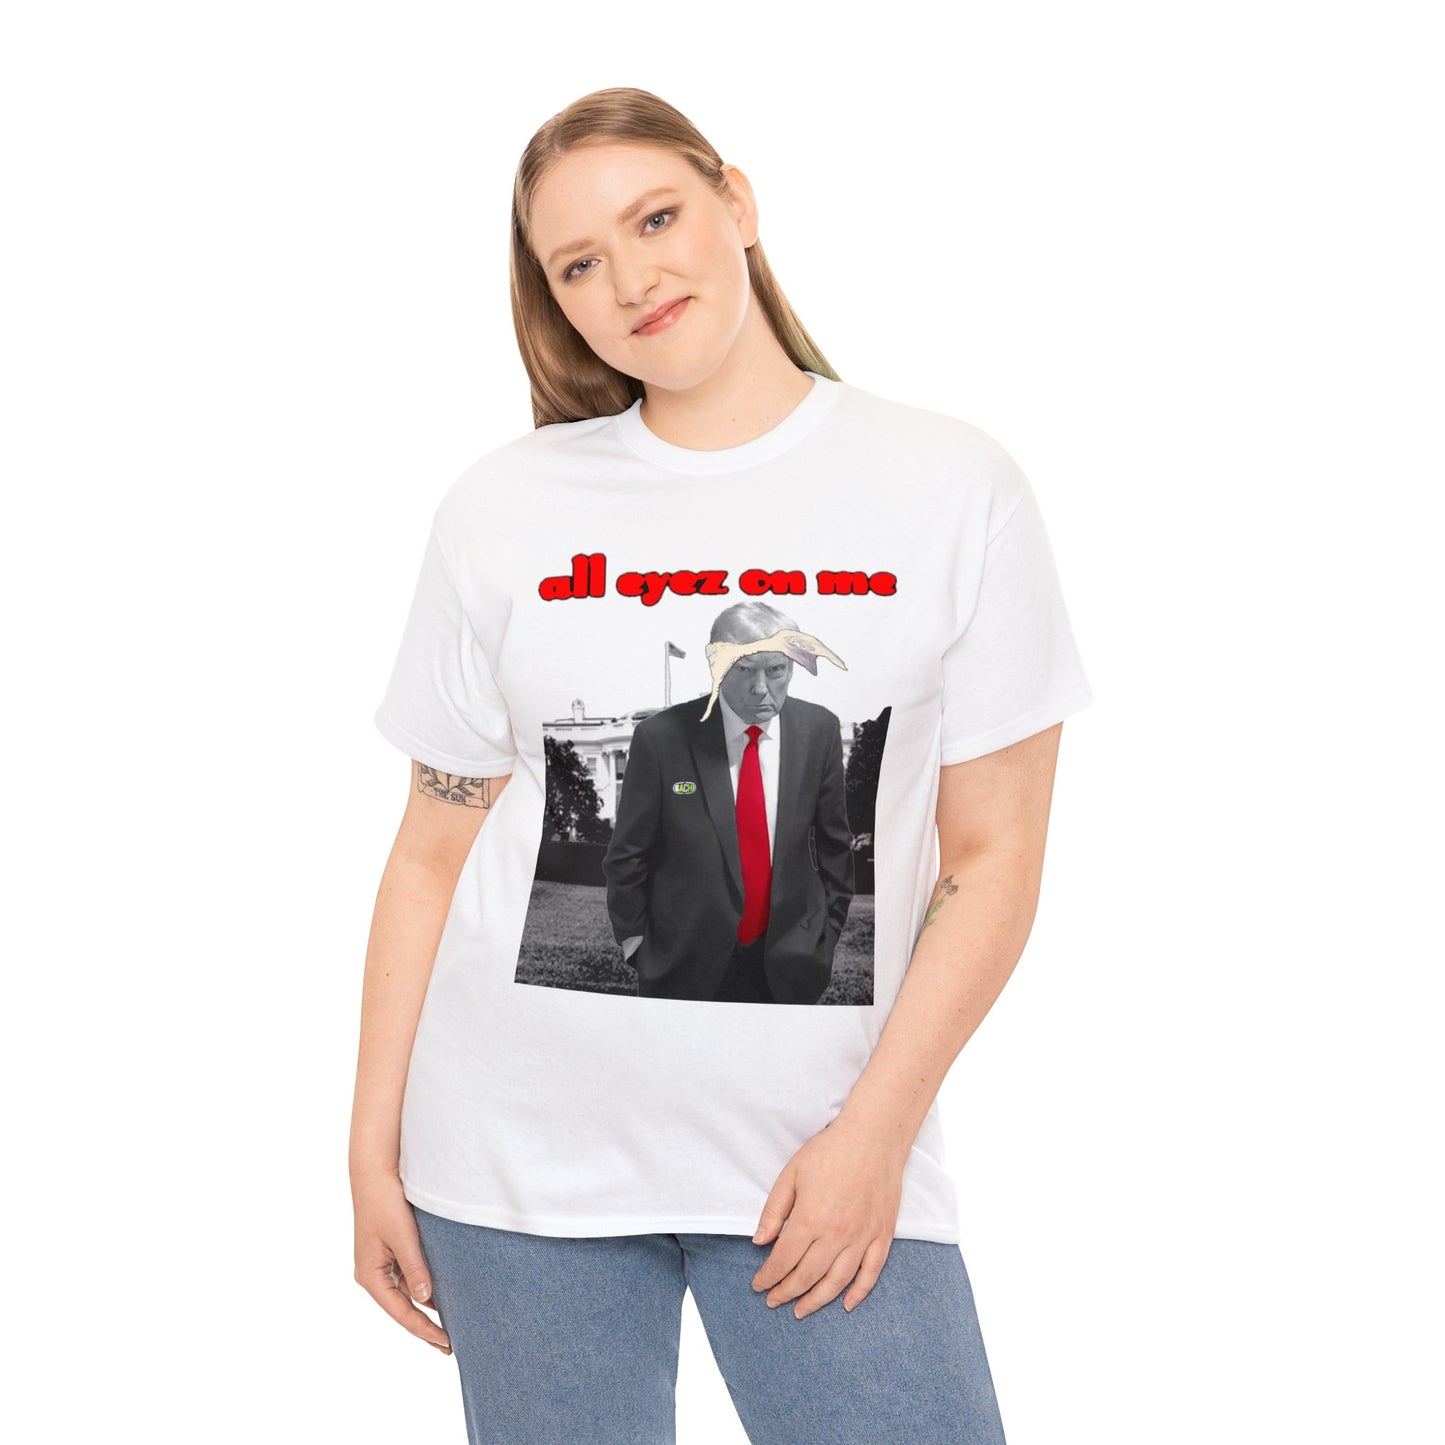 Unisex T-Shirt Donald Trump All Eyez on Me